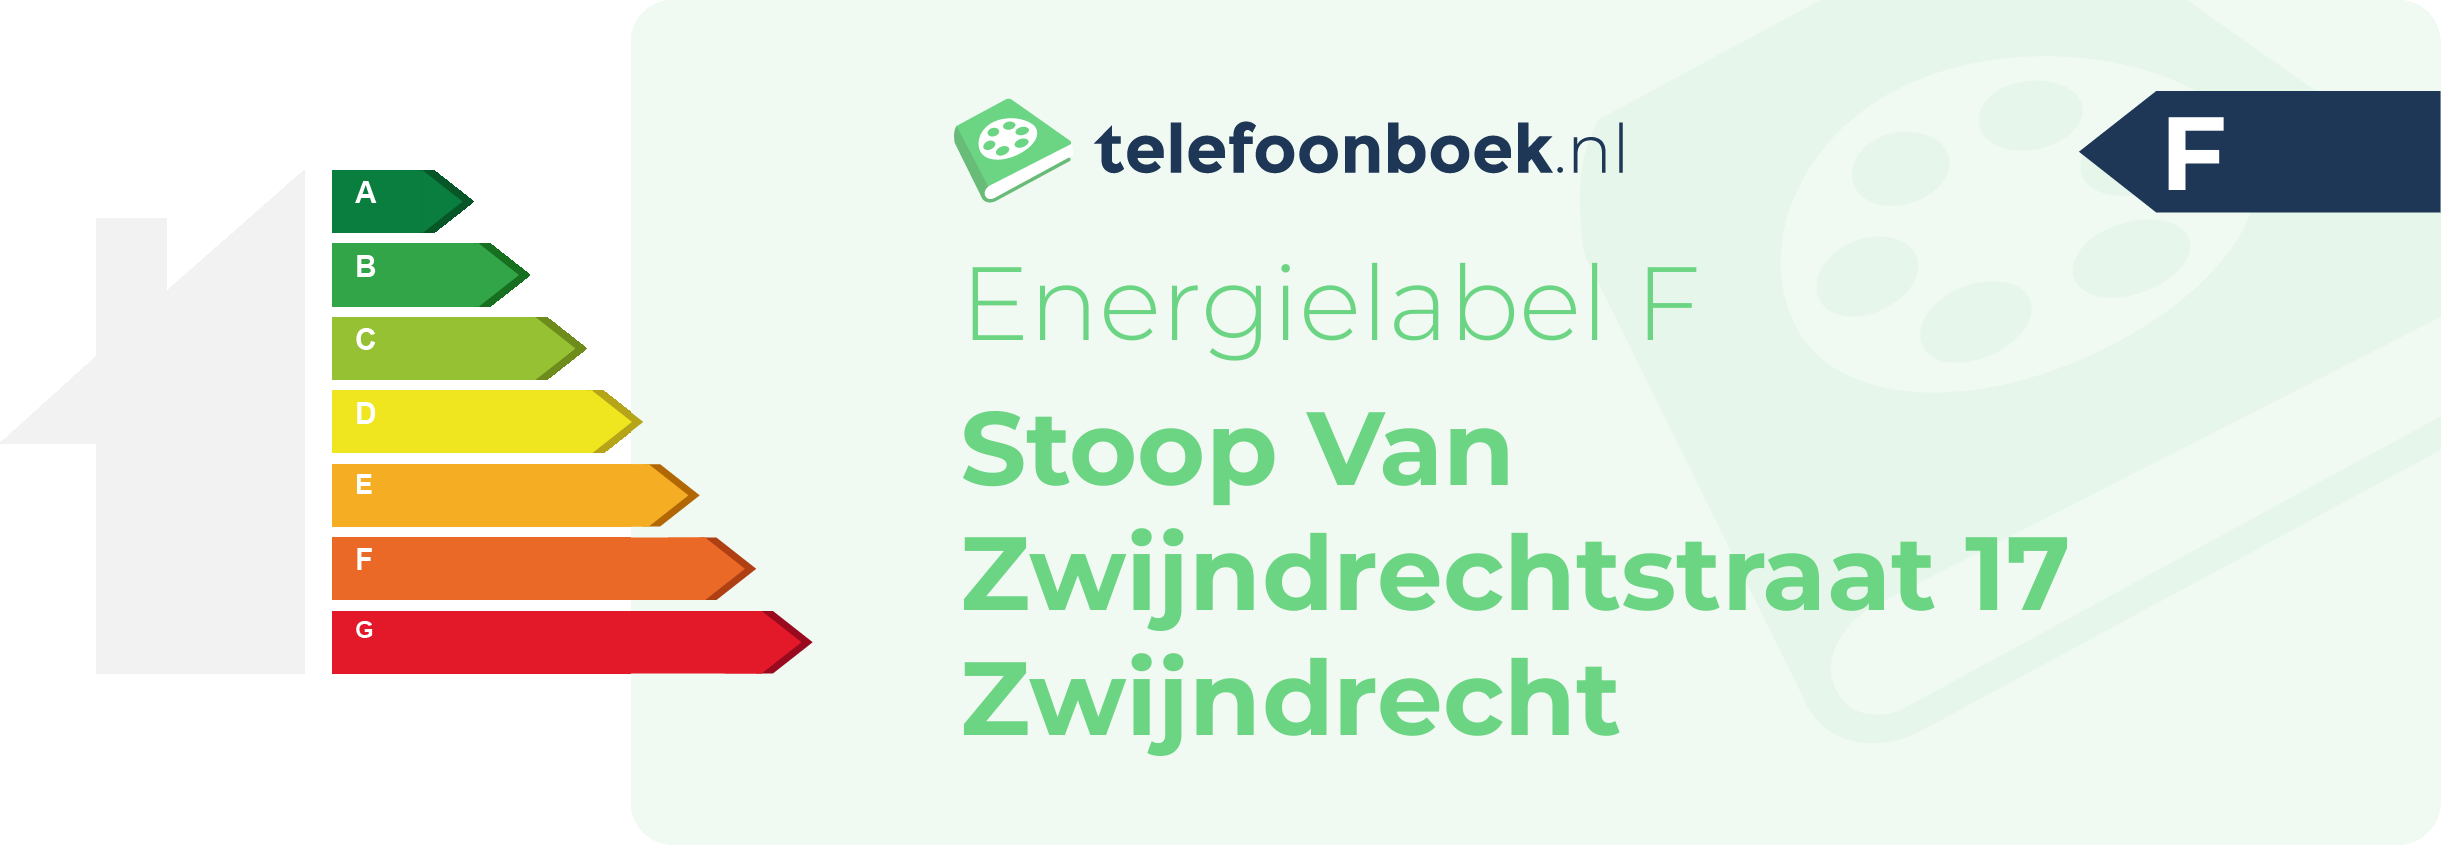 Energielabel Stoop Van Zwijndrechtstraat 17 Zwijndrecht